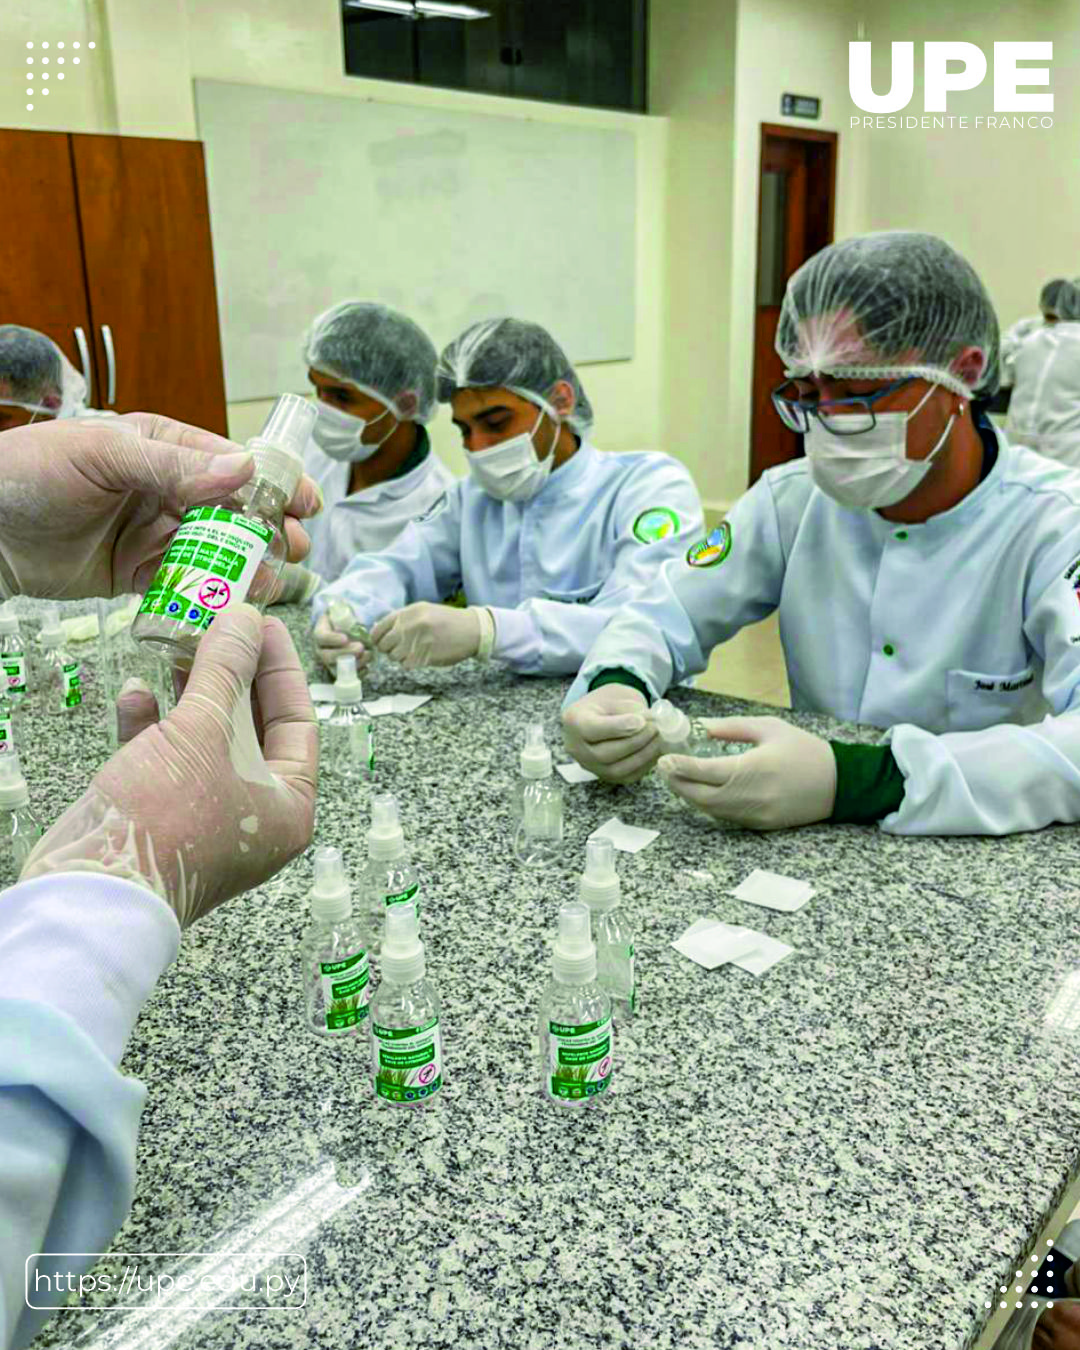 Preparación de Repelente para Mosquitos: Integrando Química y Agricultura en la Práctica de Laboratorio